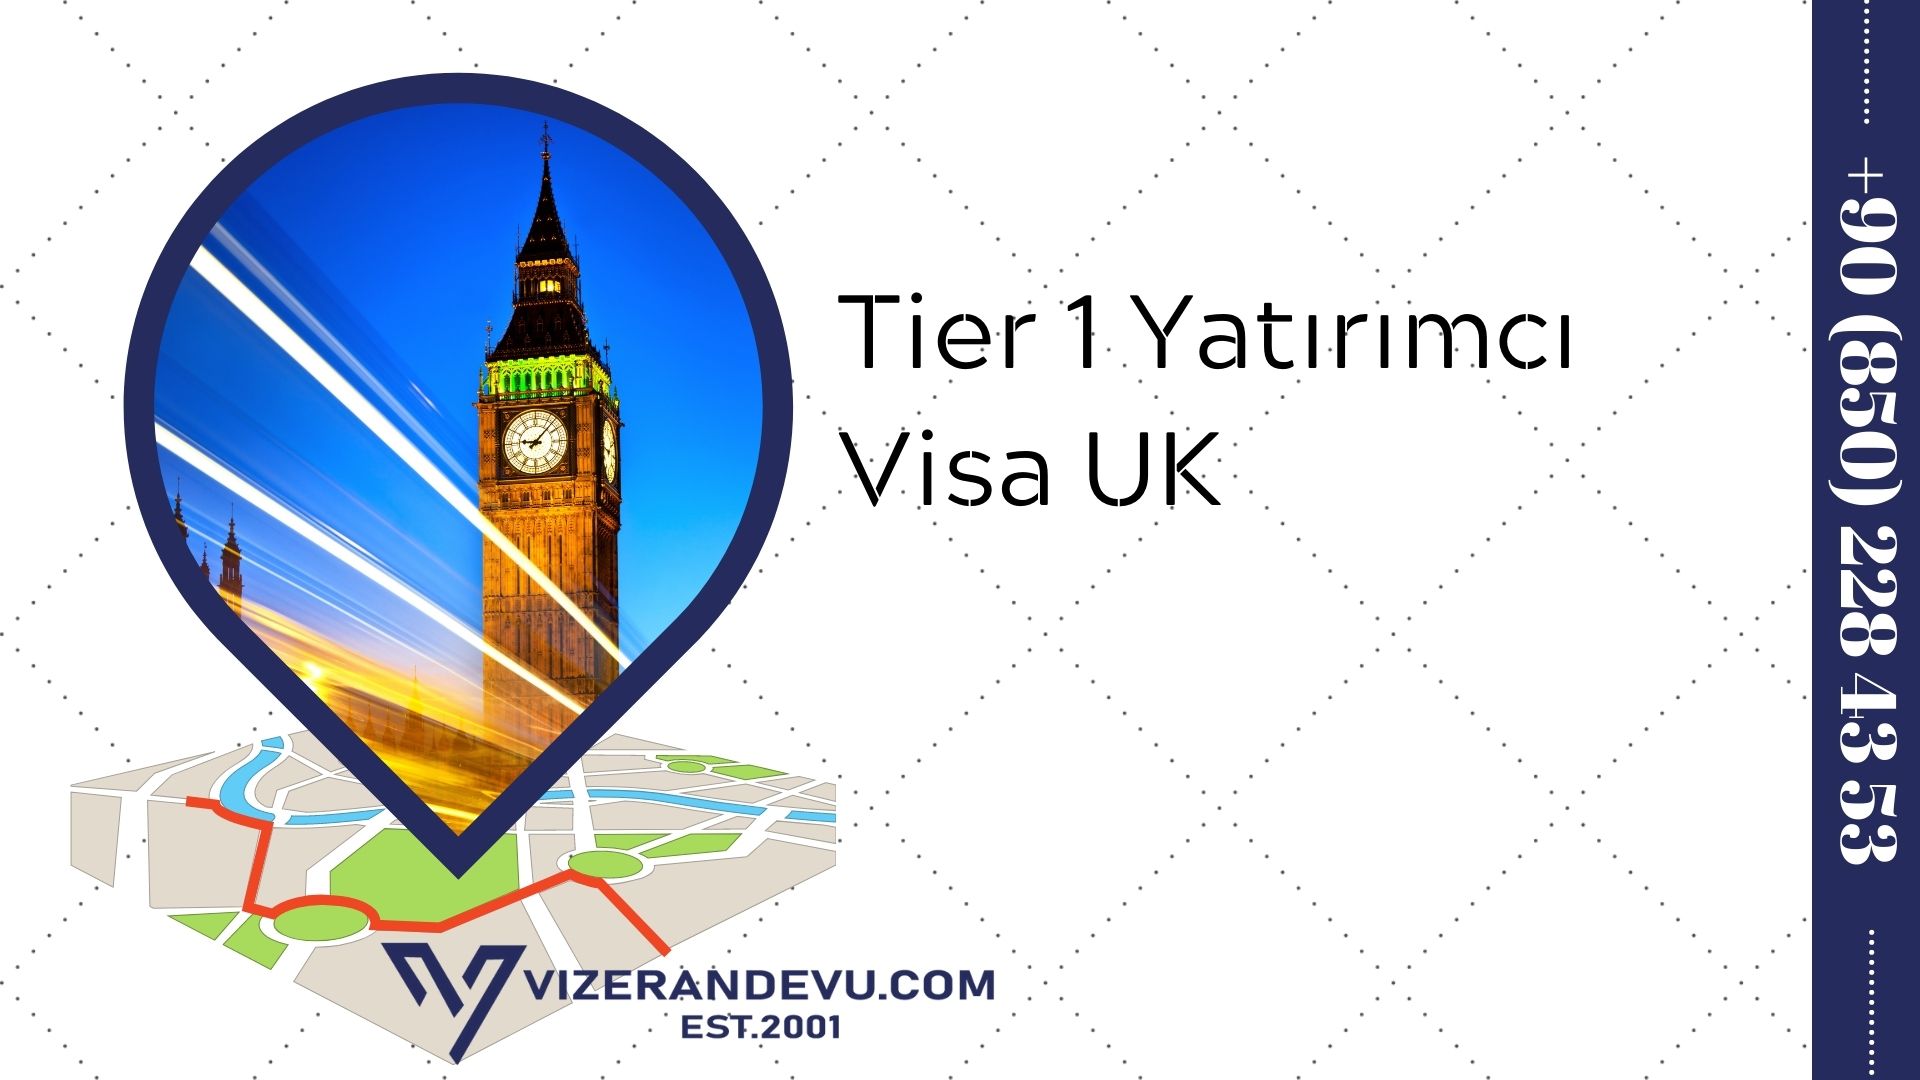 Tier 1 Yatırımcı Visa UK